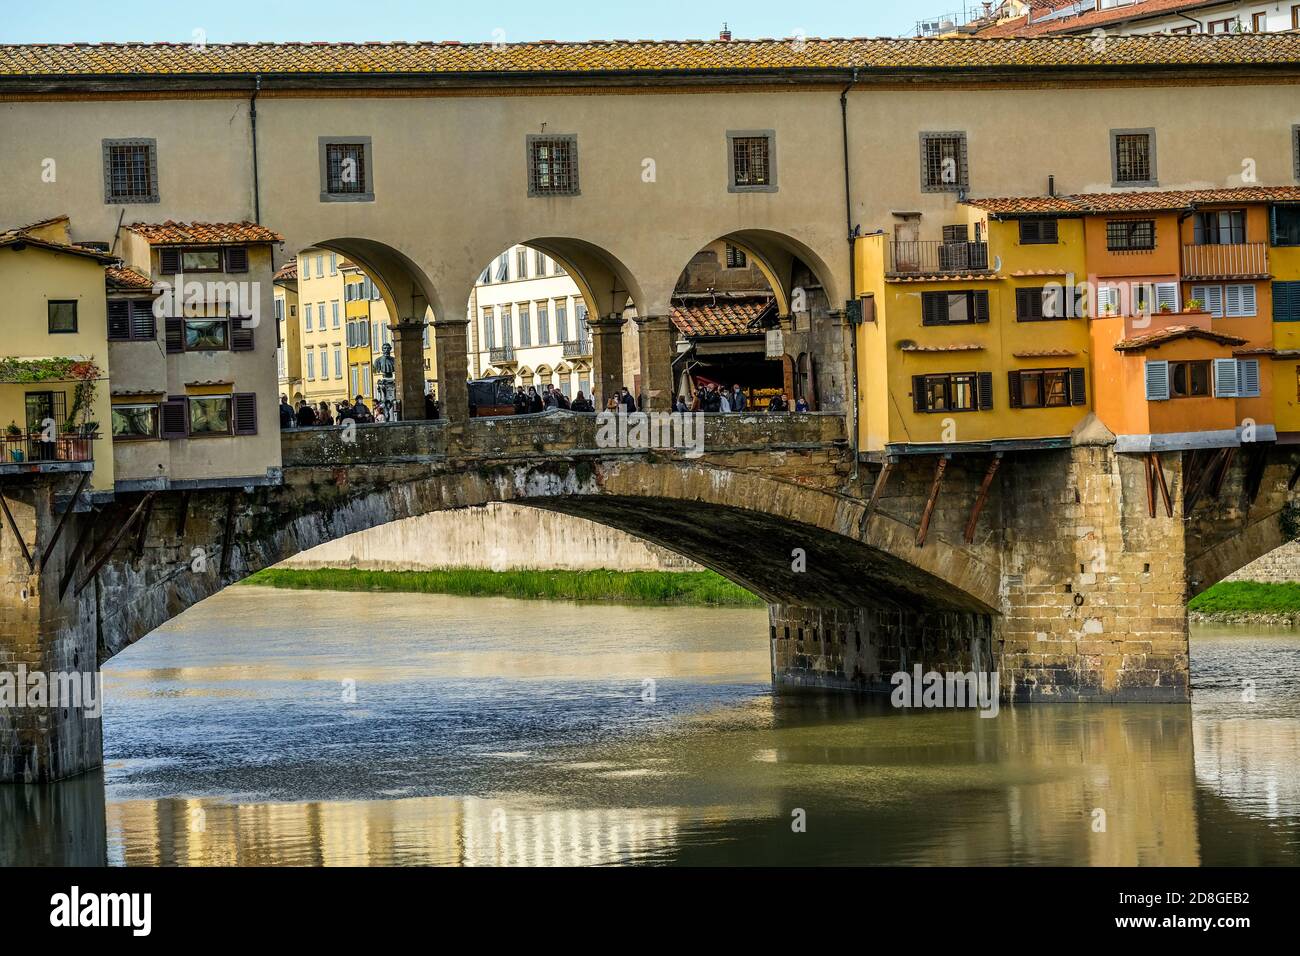 Ponte Vecchio historic bridge in Florence, Italy Stock Photo